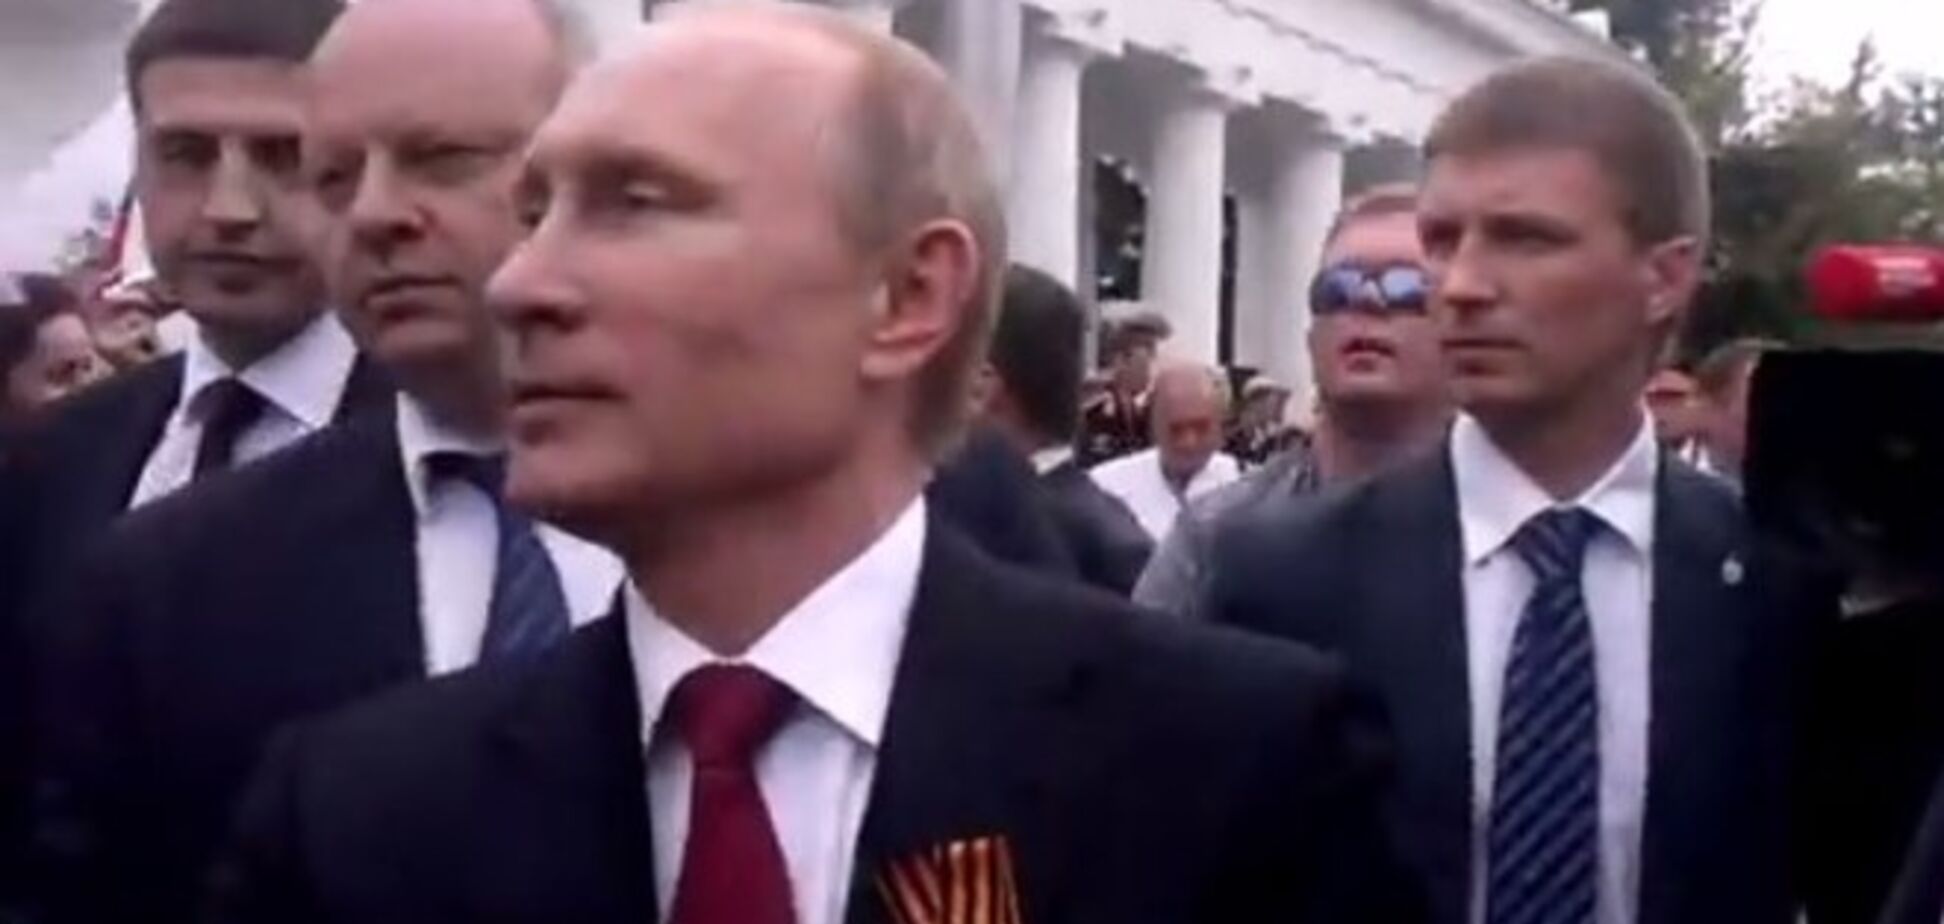 ЗМІ видали відео травневої істерики через приїзд Путіна в Севастополь за його візит 13 серпня